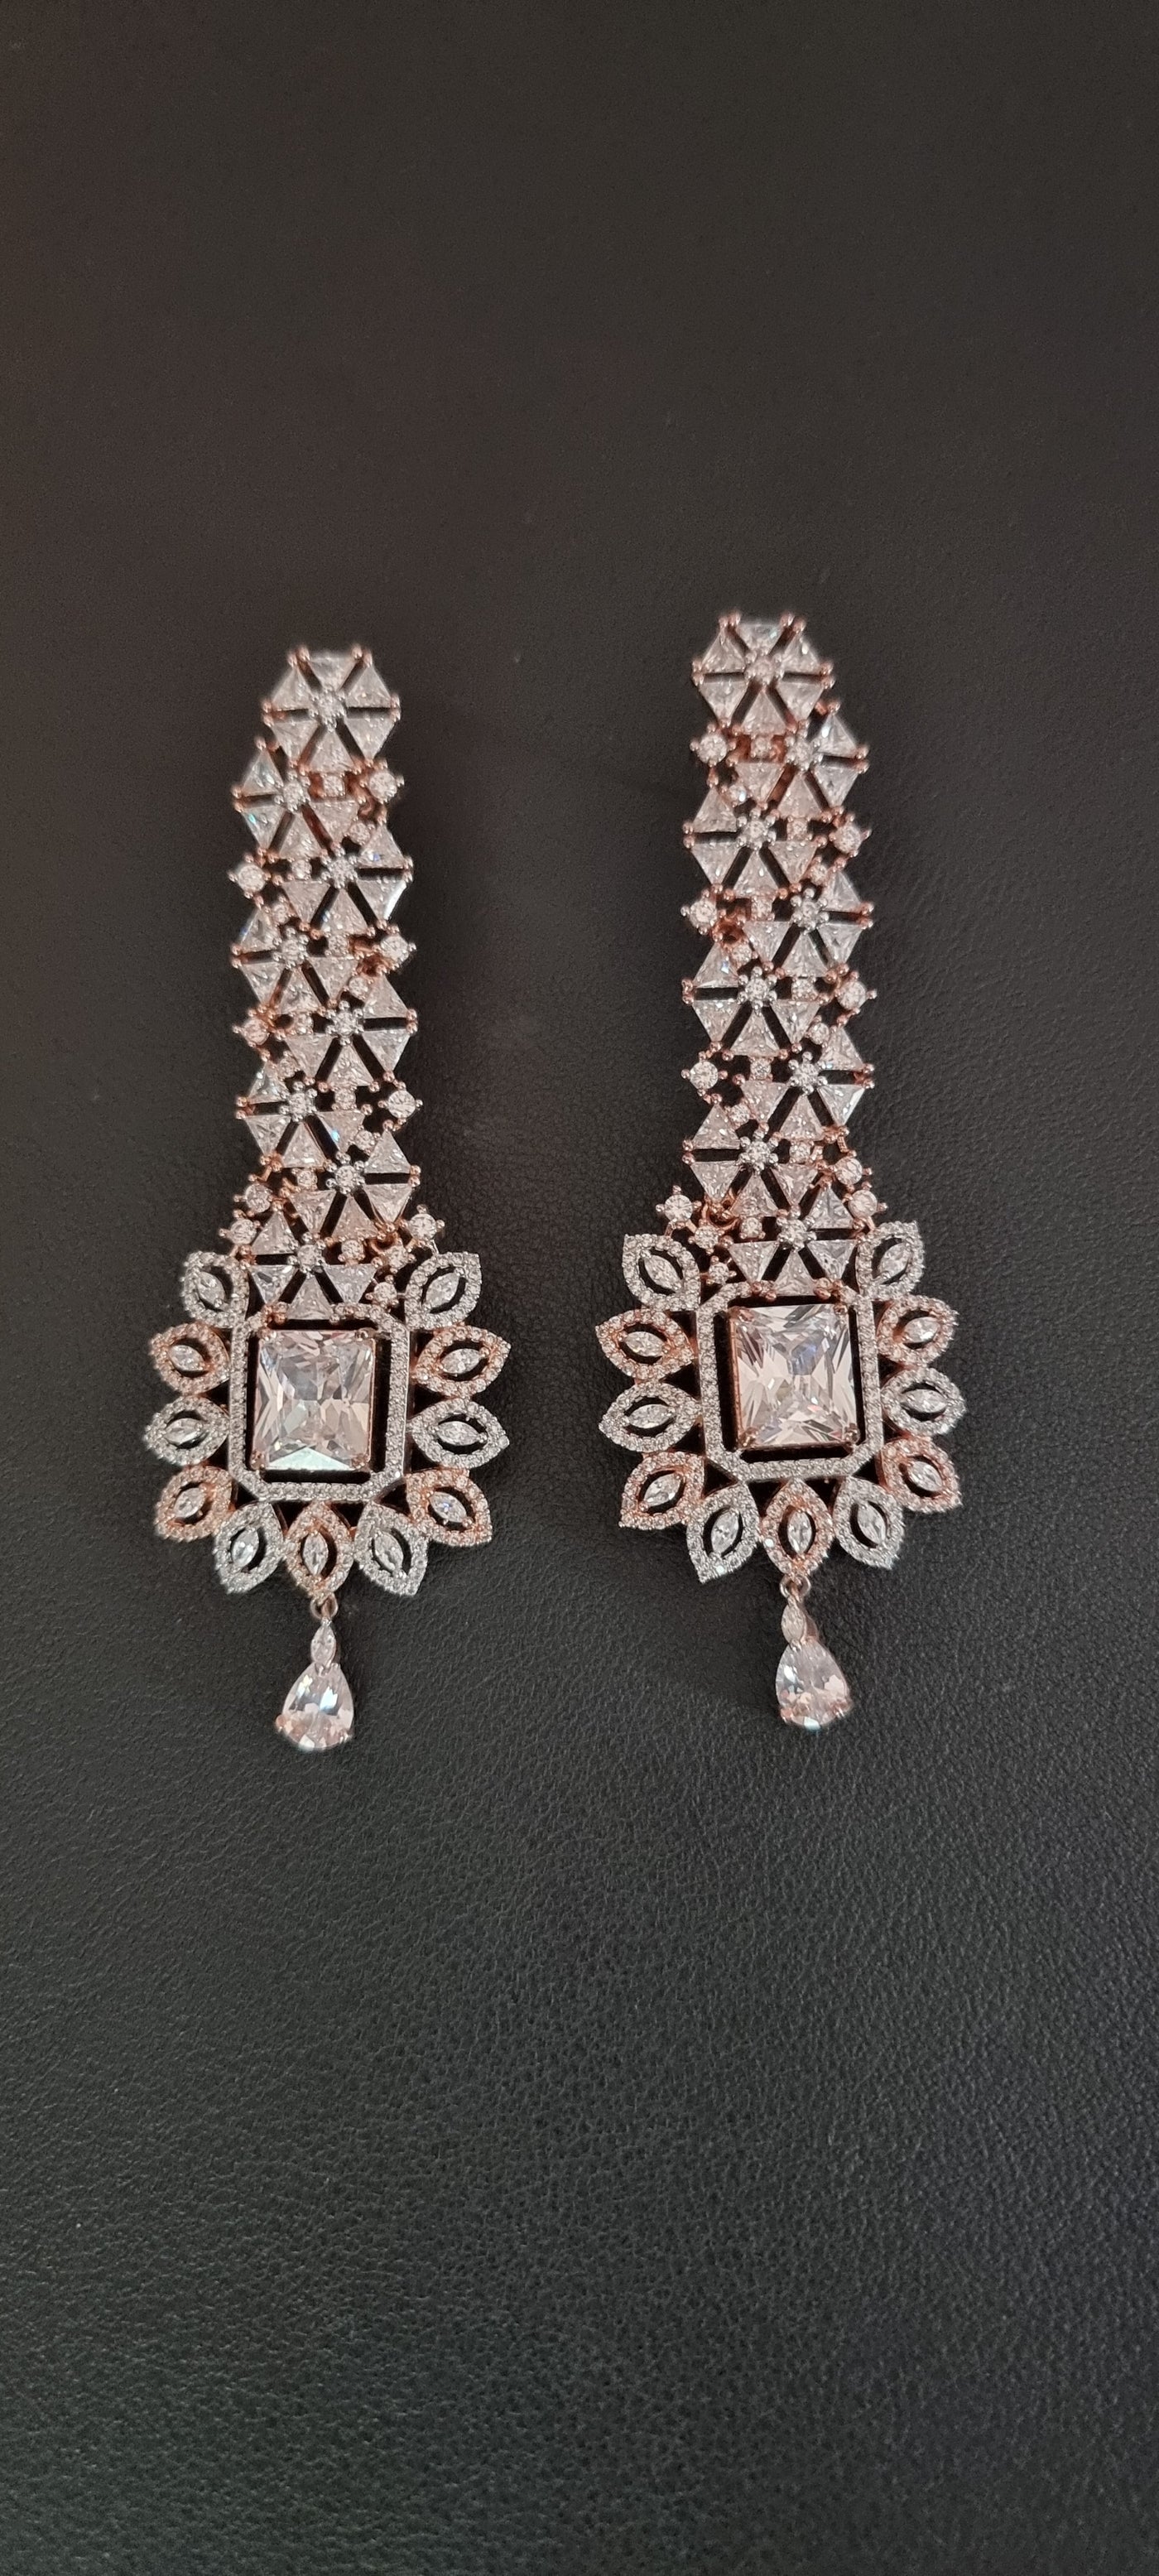 American Diamond (CZ) earrings (SJADE1)